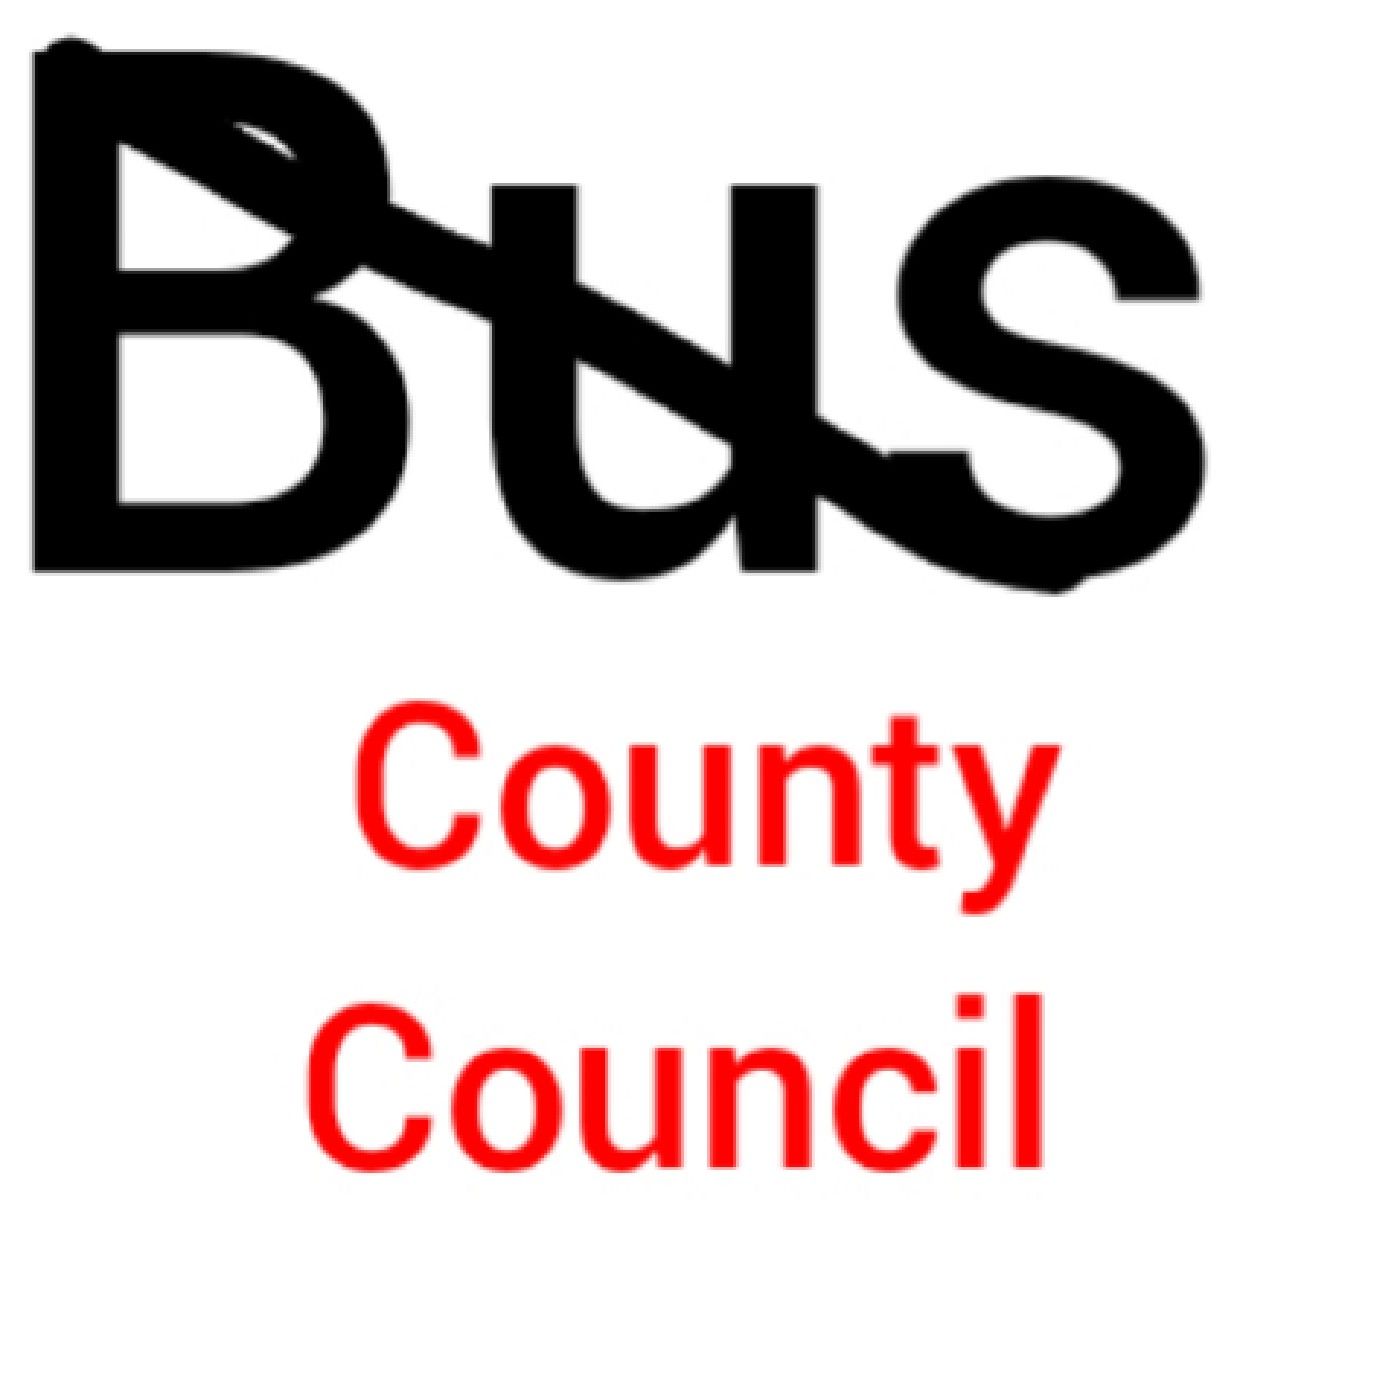 Episode 5 - Bus County Council Raido